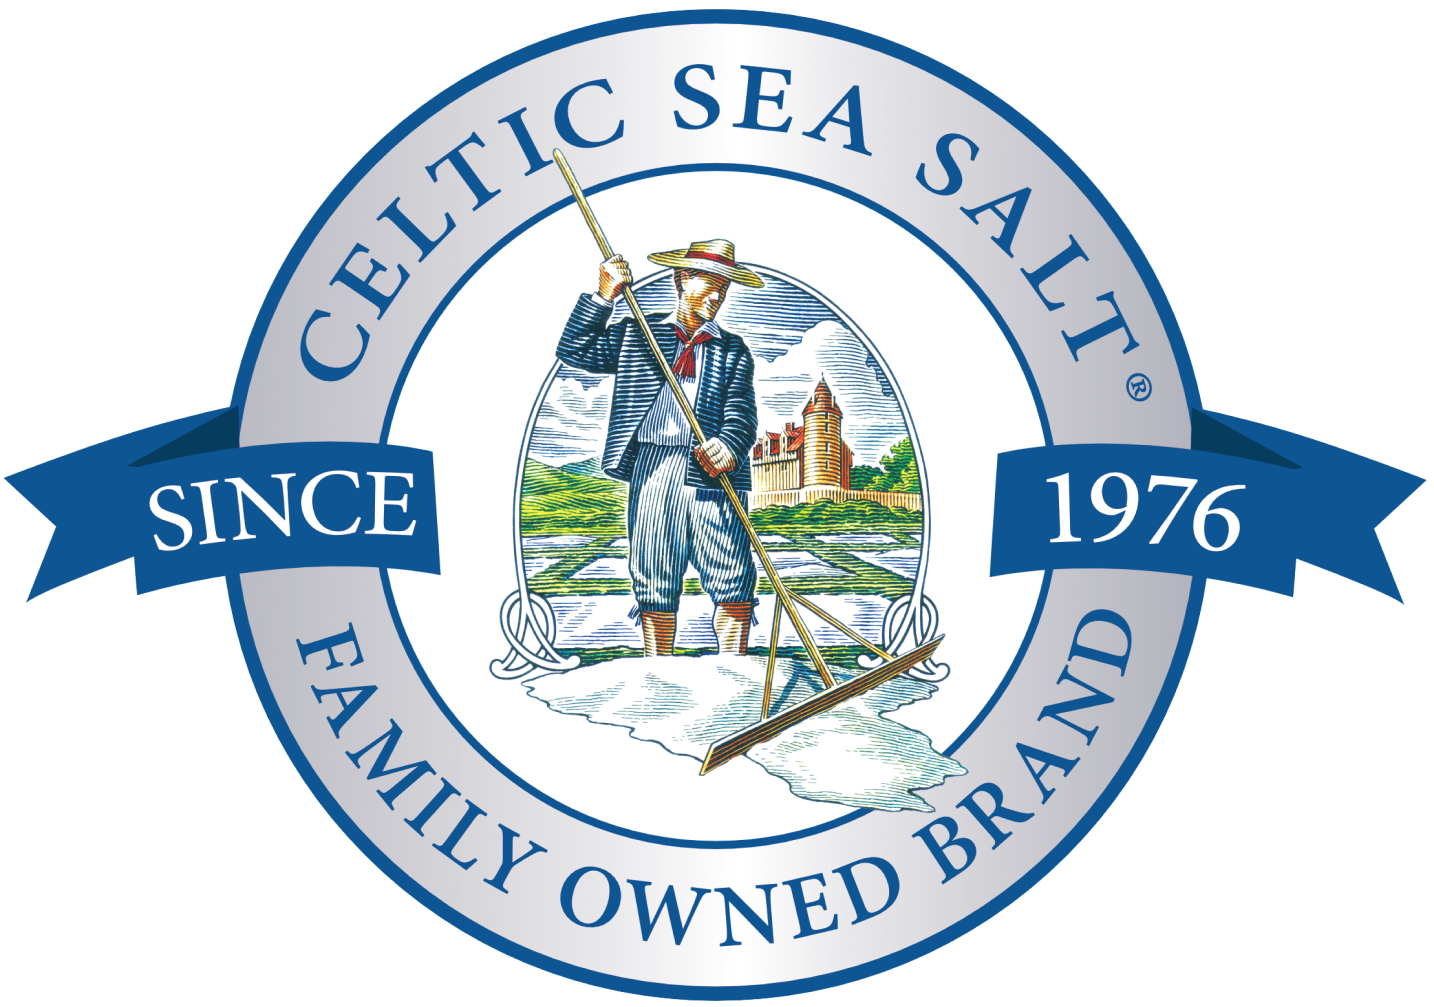 Celtic sea salt logo